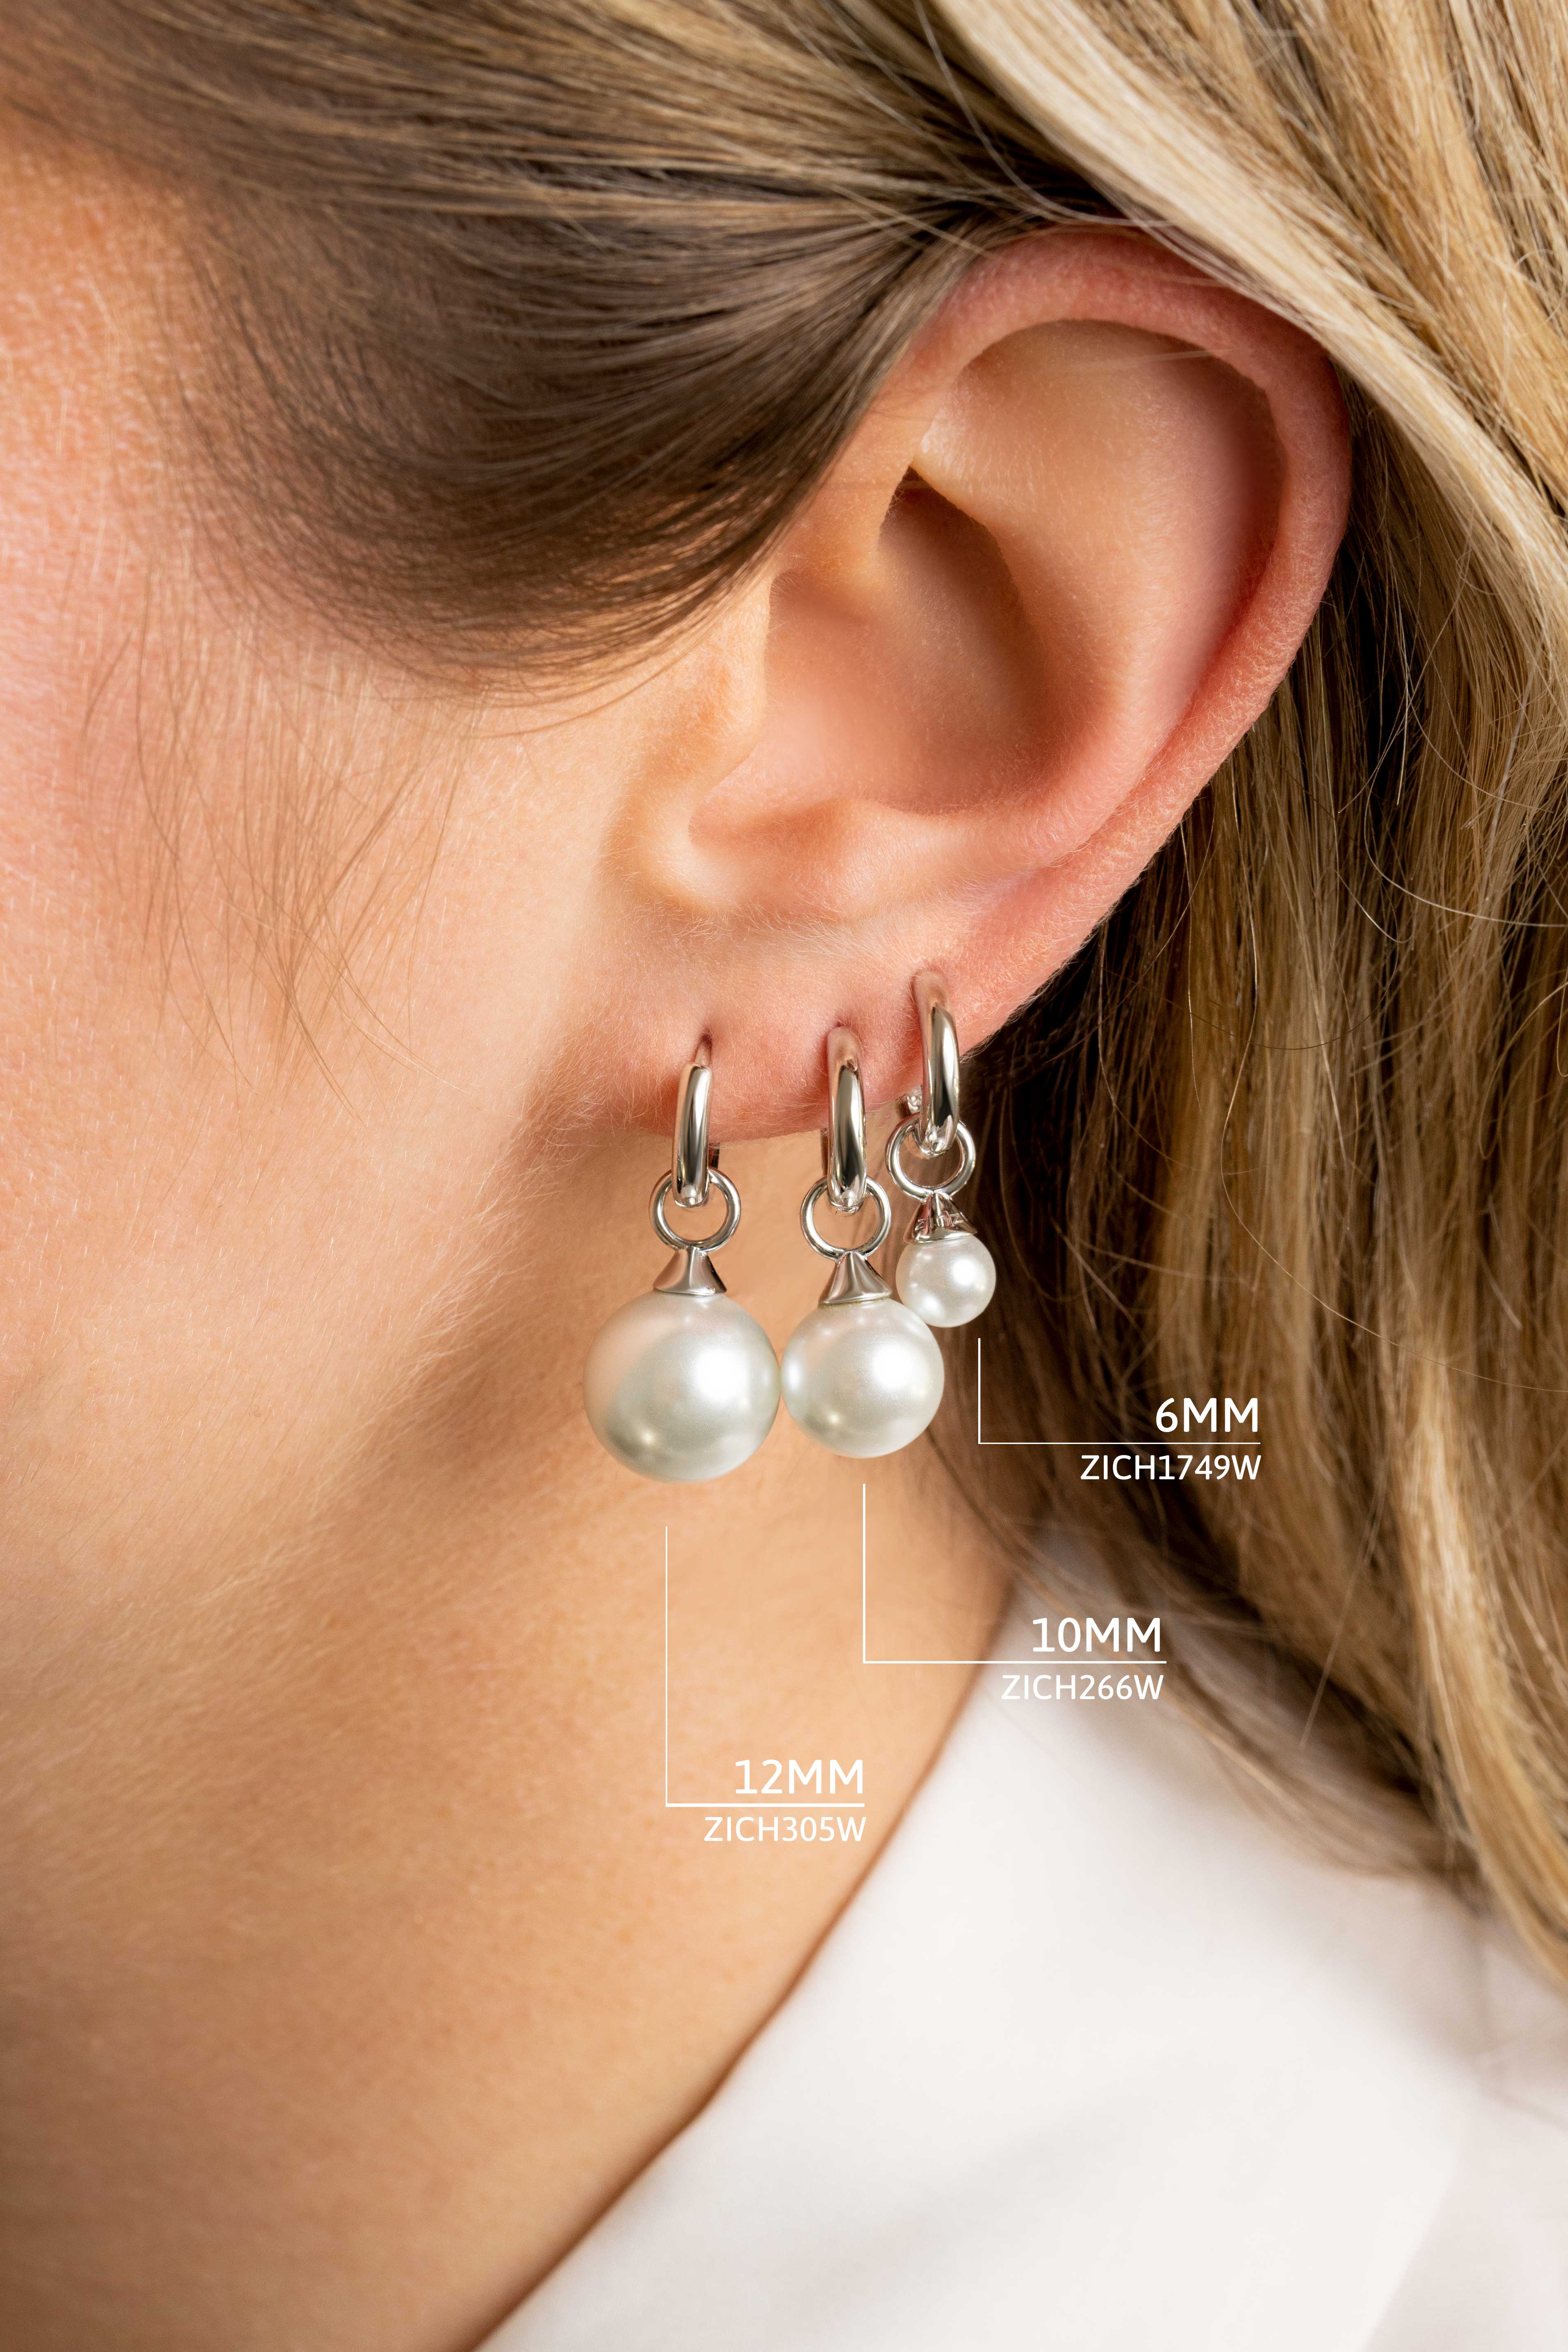 10mm ZINZI Sterling Silver Earrings Pendants Pearl White ZICH266W (excl. hoop earrings)